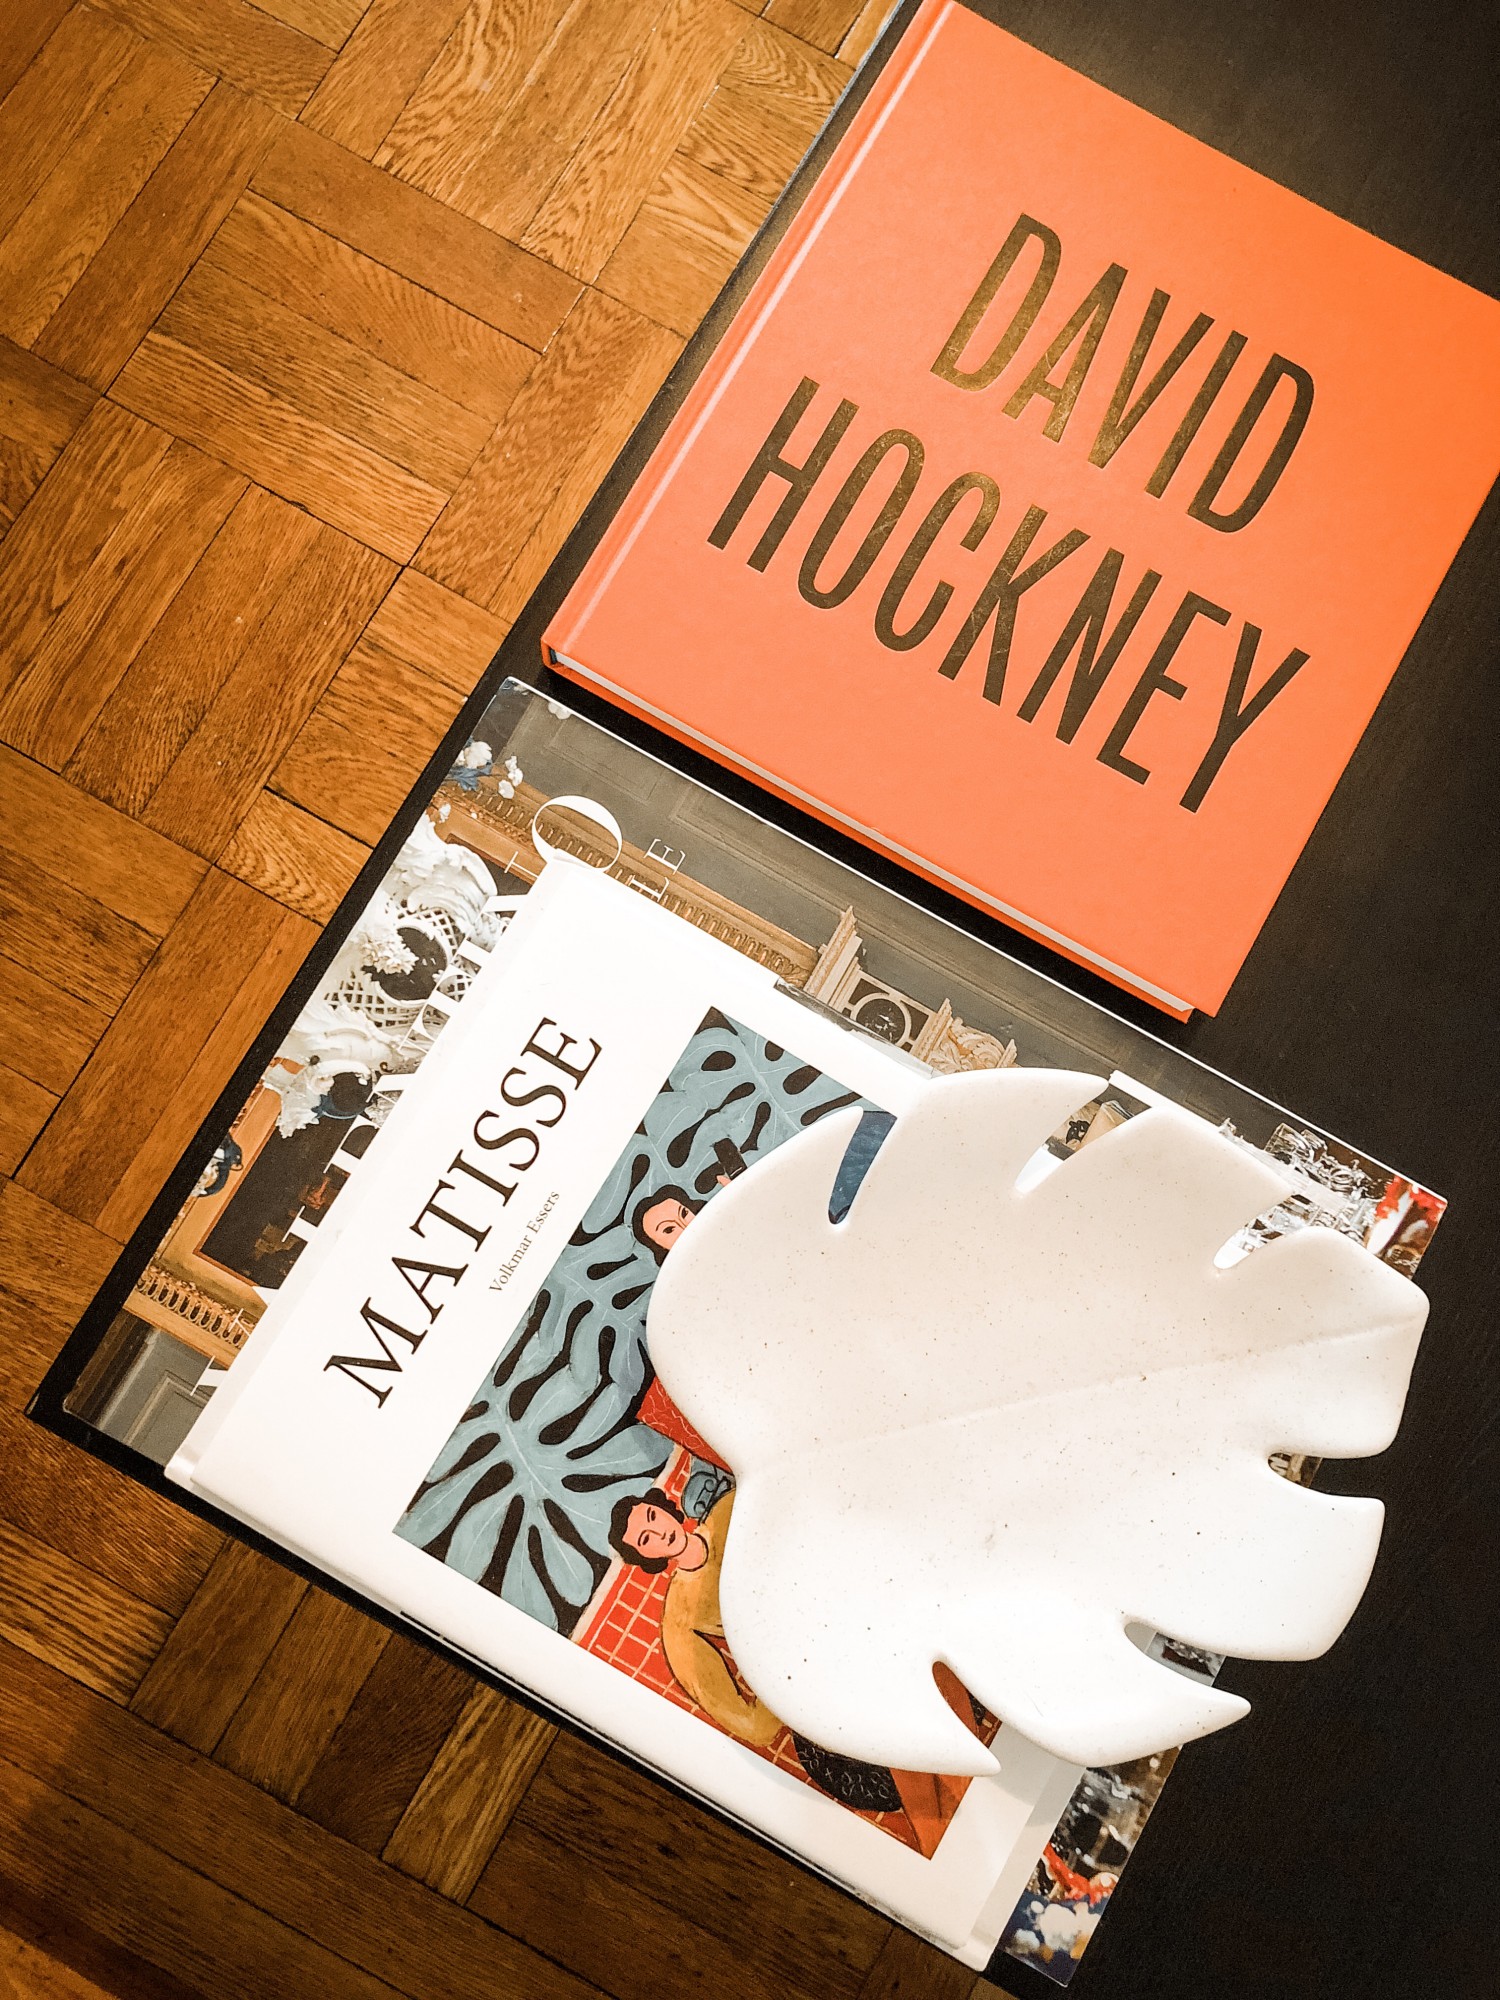 david-hockney-art-book